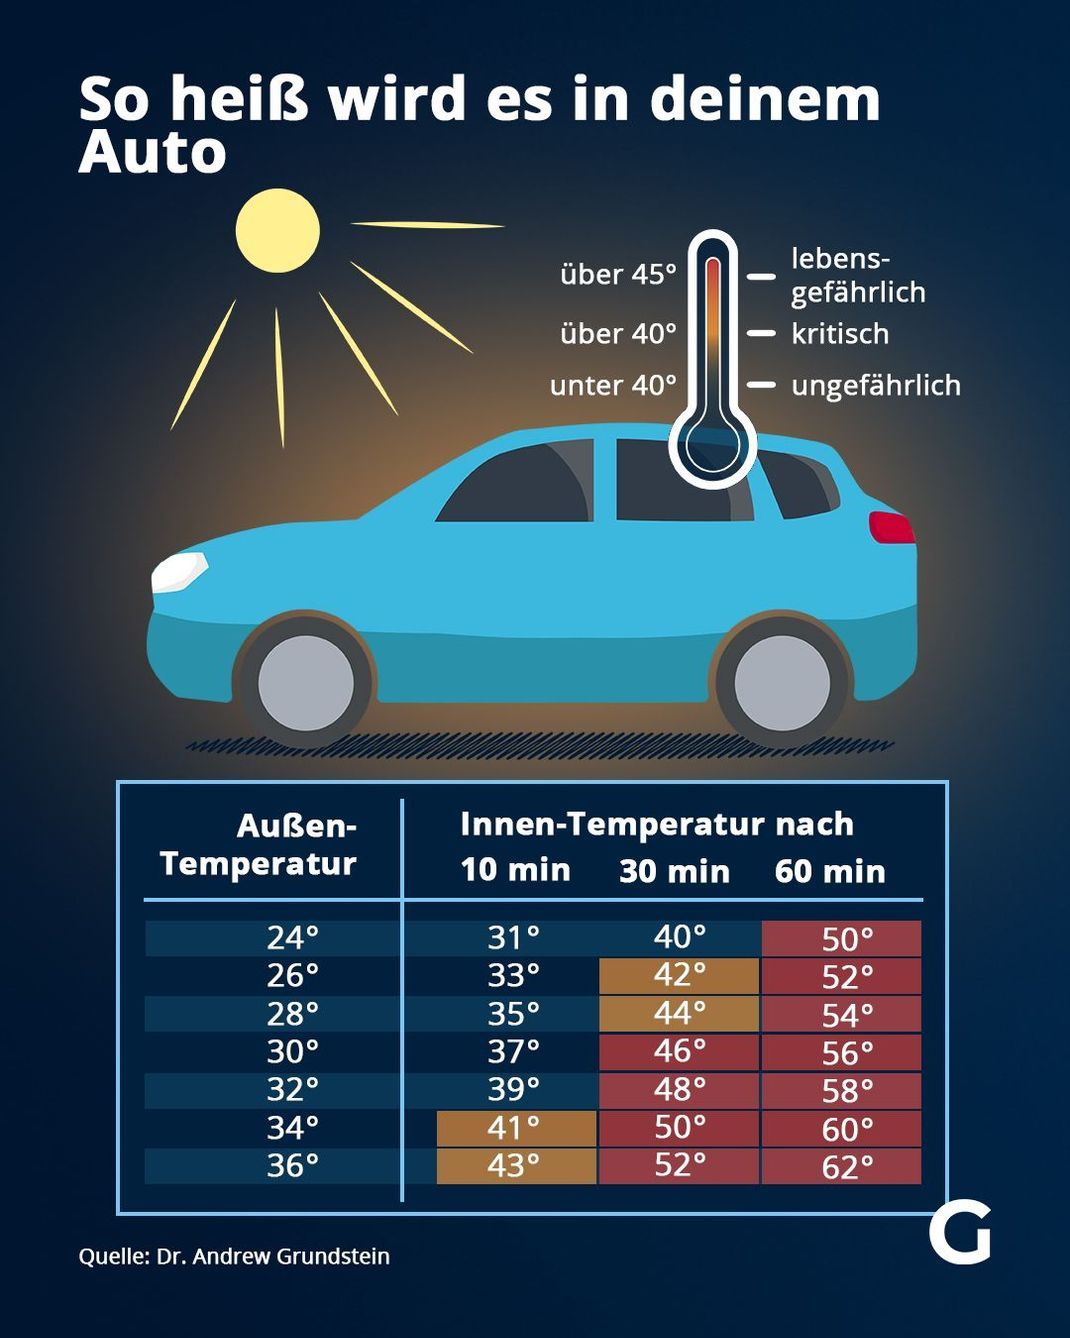 So heiß wird es in deinem Auto